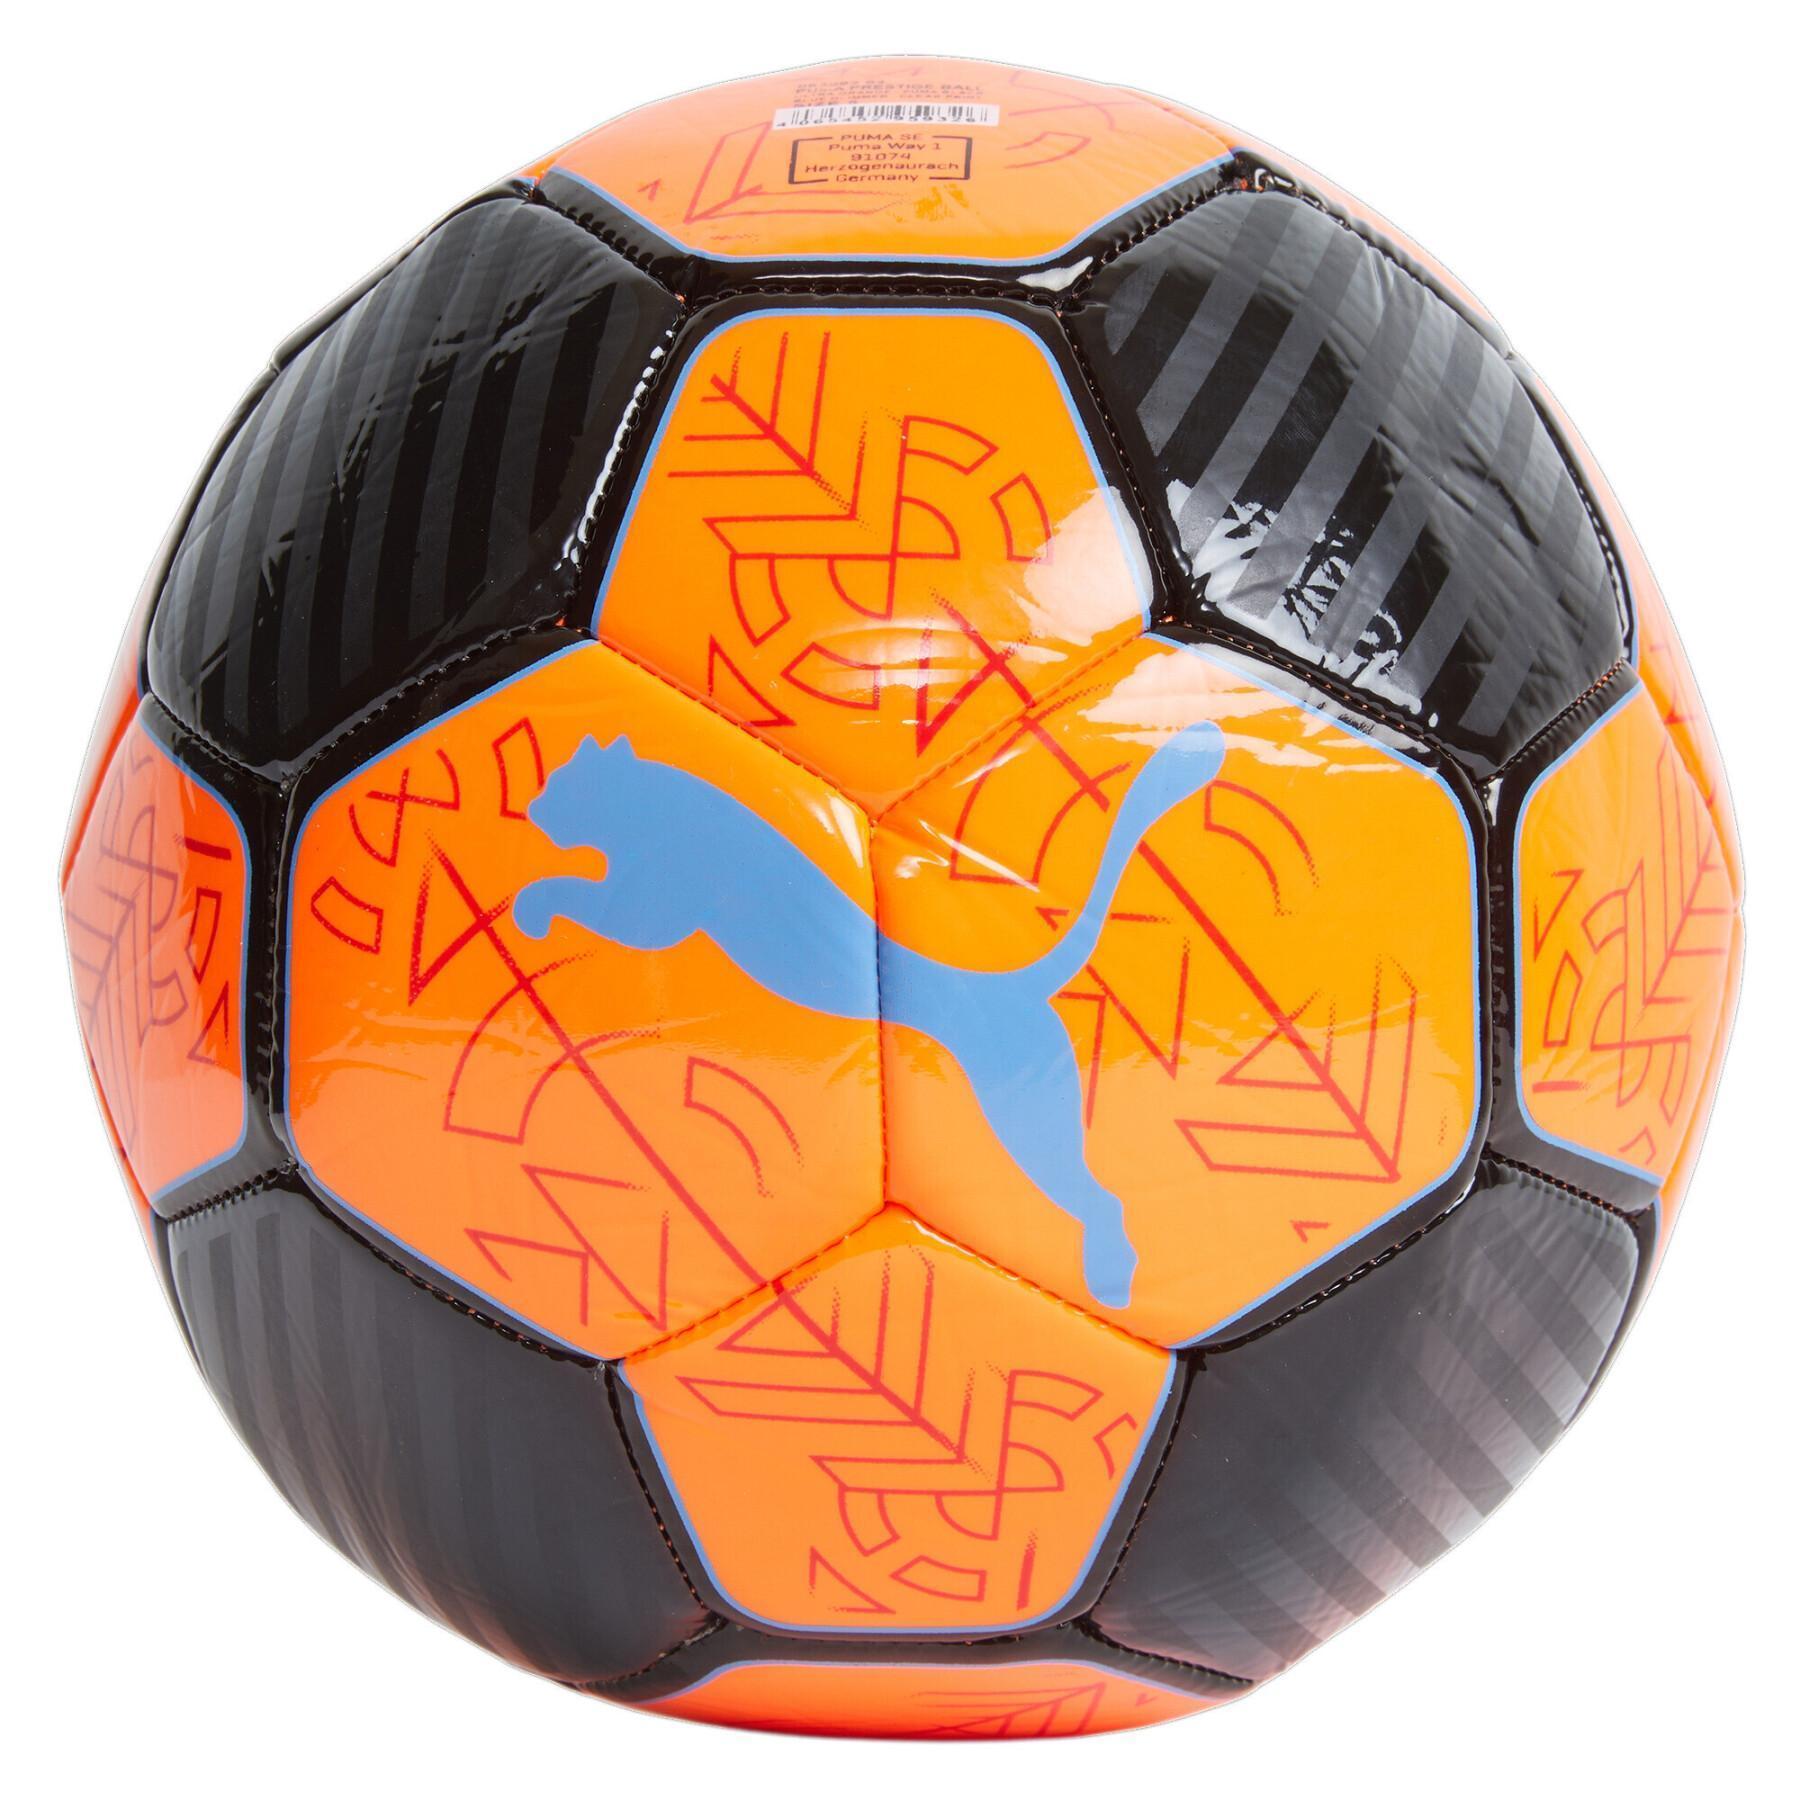 Ballon De Football En Pu, Rembourrage Premium Pour Jeux D